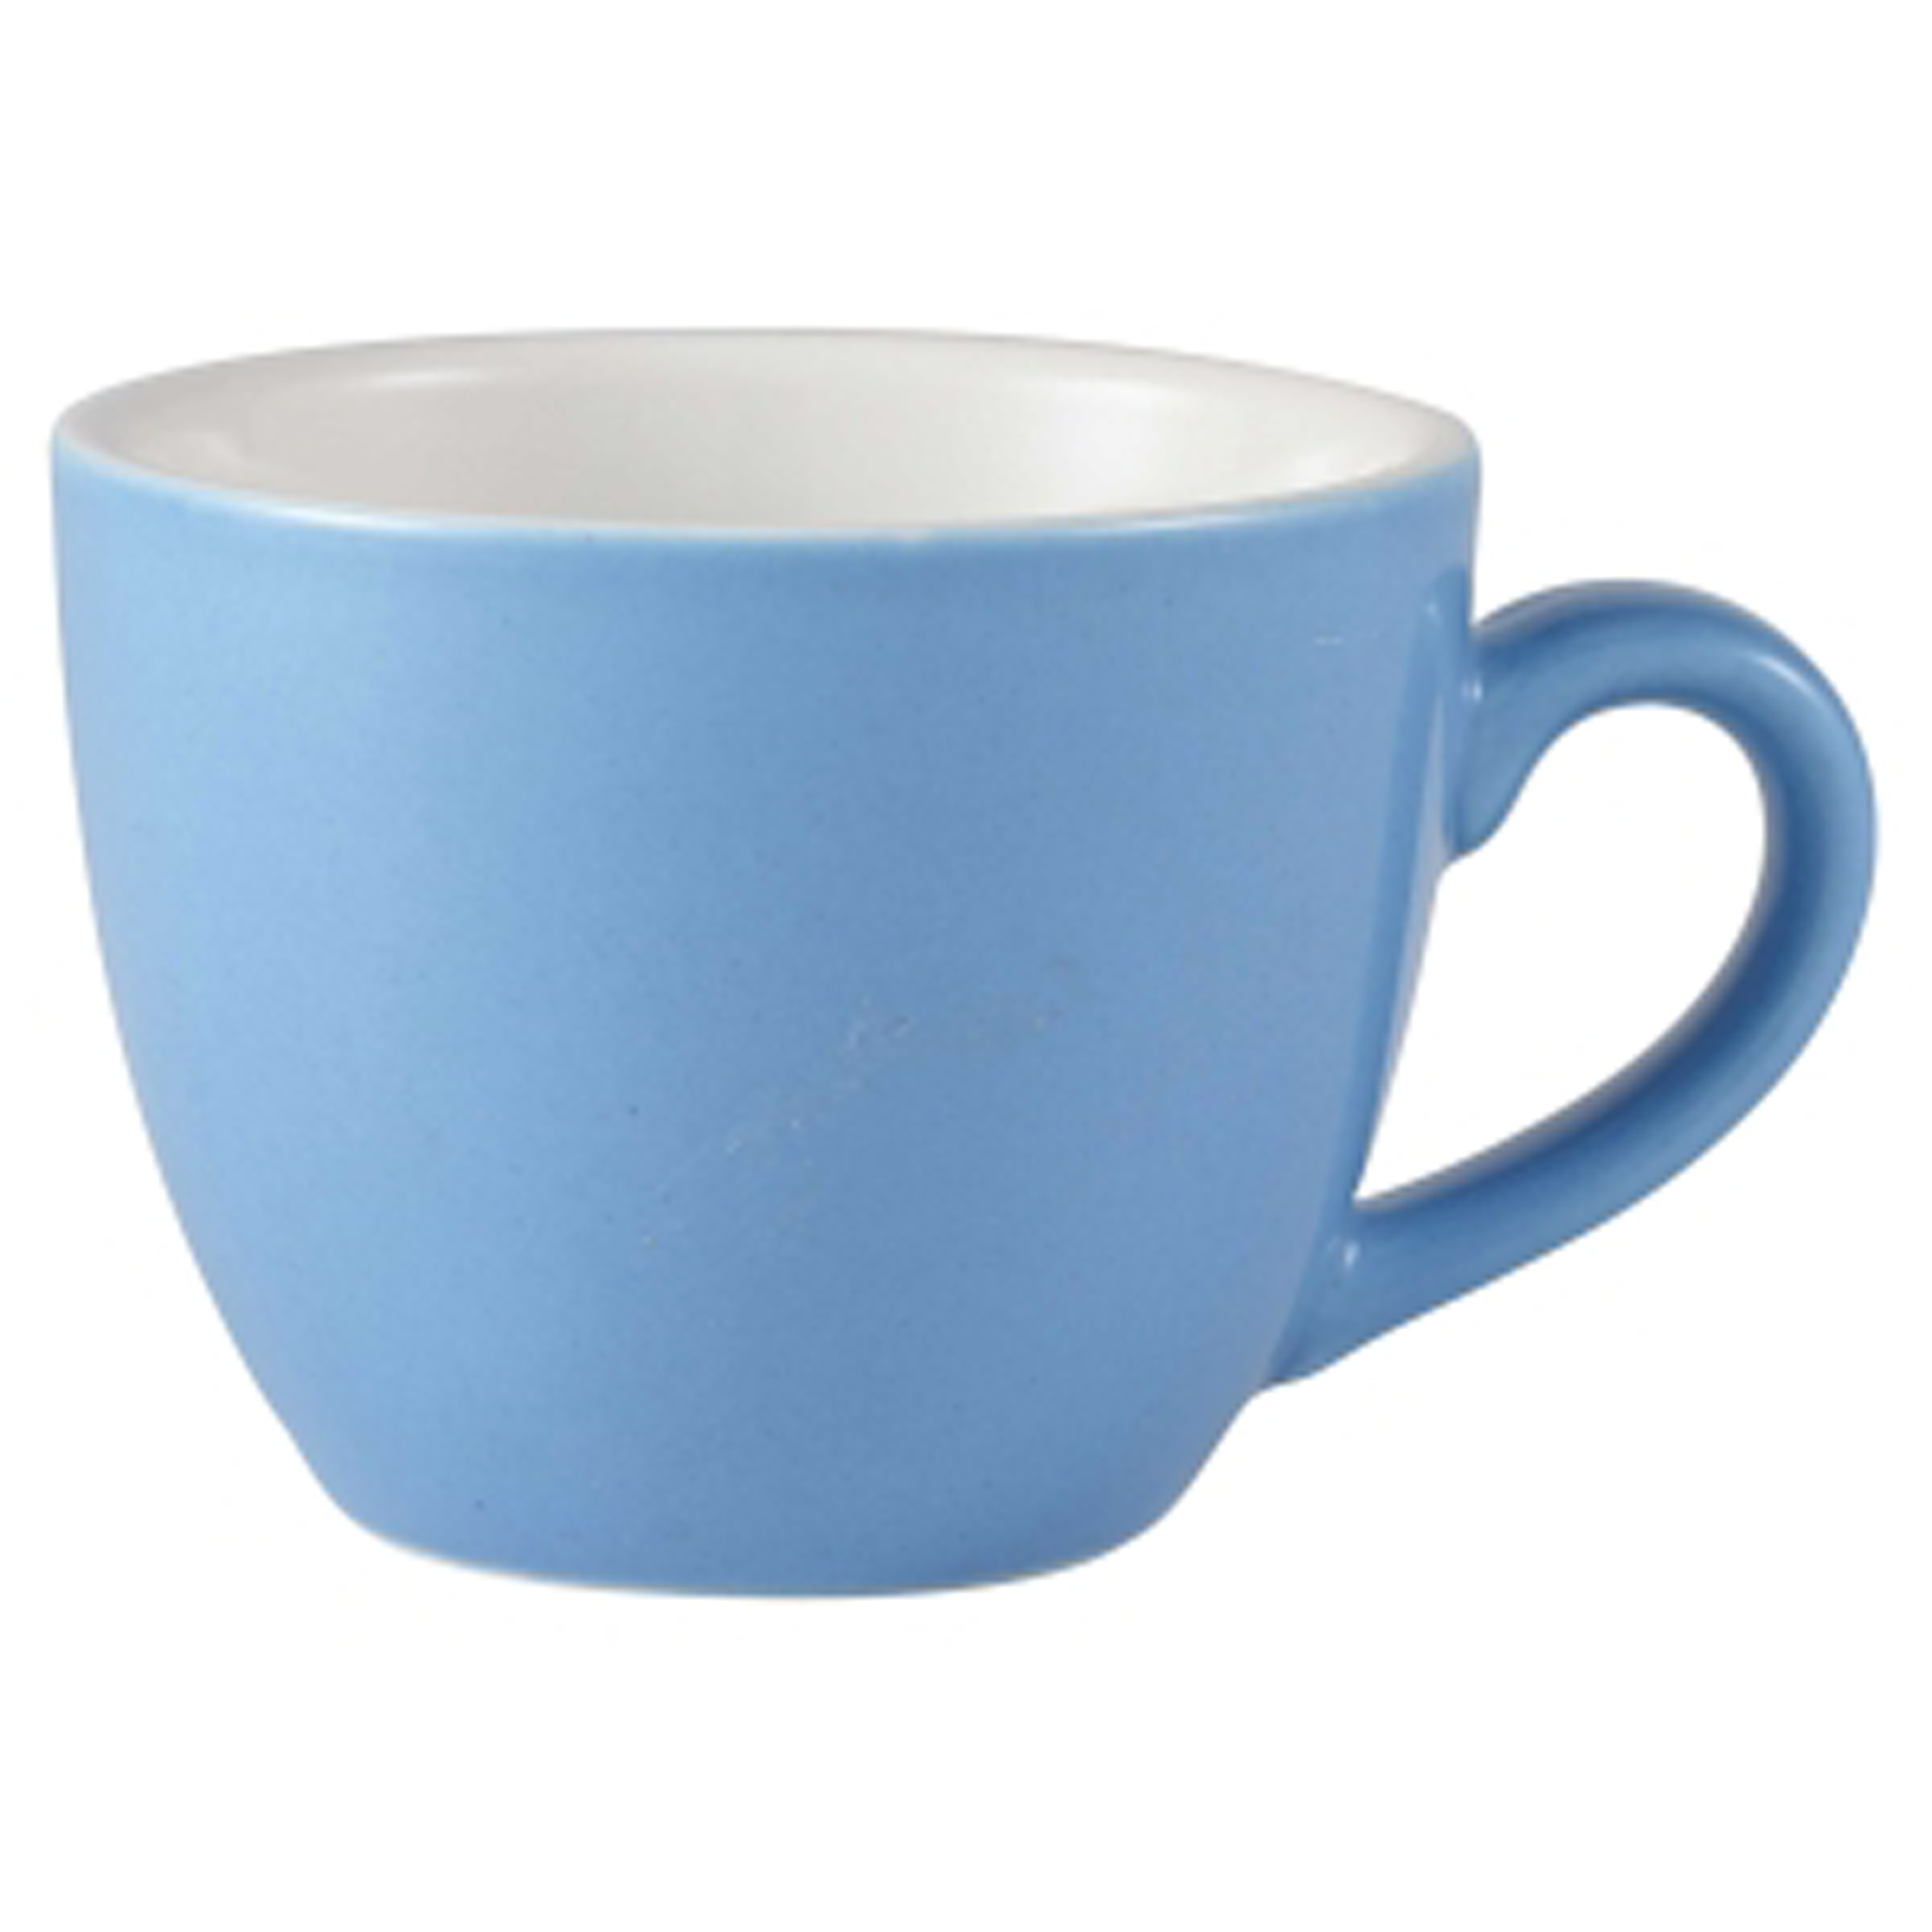 Громадная голубая чаша. Синяя Кружка. Синяя Кружка для детей. Чашка голубого цвета.